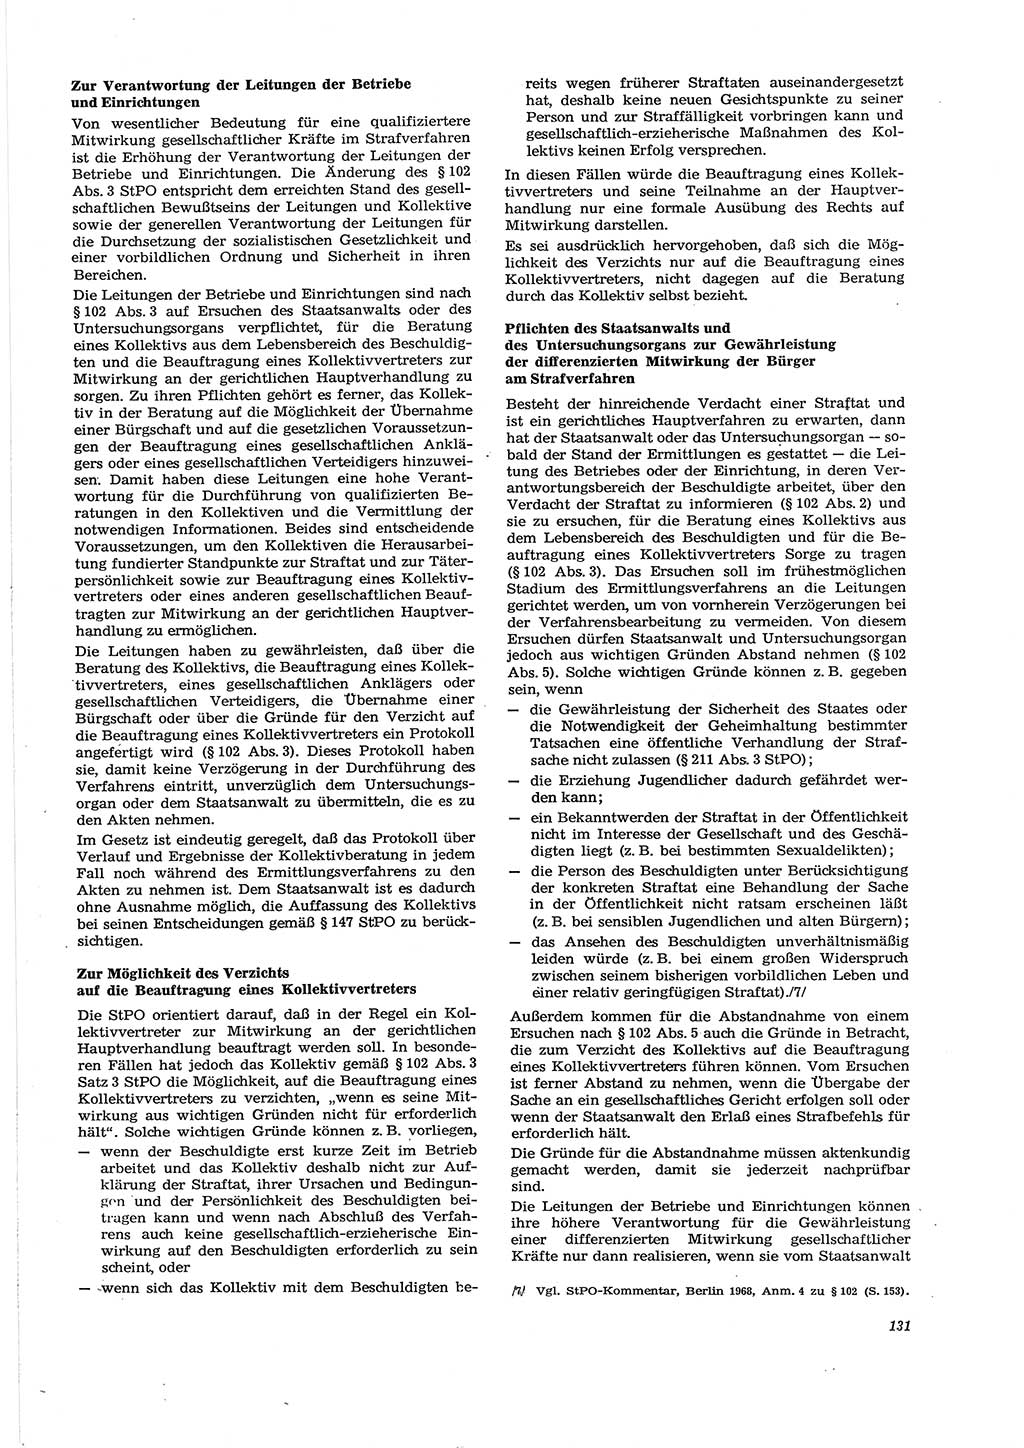 Neue Justiz (NJ), Zeitschrift für Recht und Rechtswissenschaft [Deutsche Demokratische Republik (DDR)], 29. Jahrgang 1975, Seite 131 (NJ DDR 1975, S. 131)